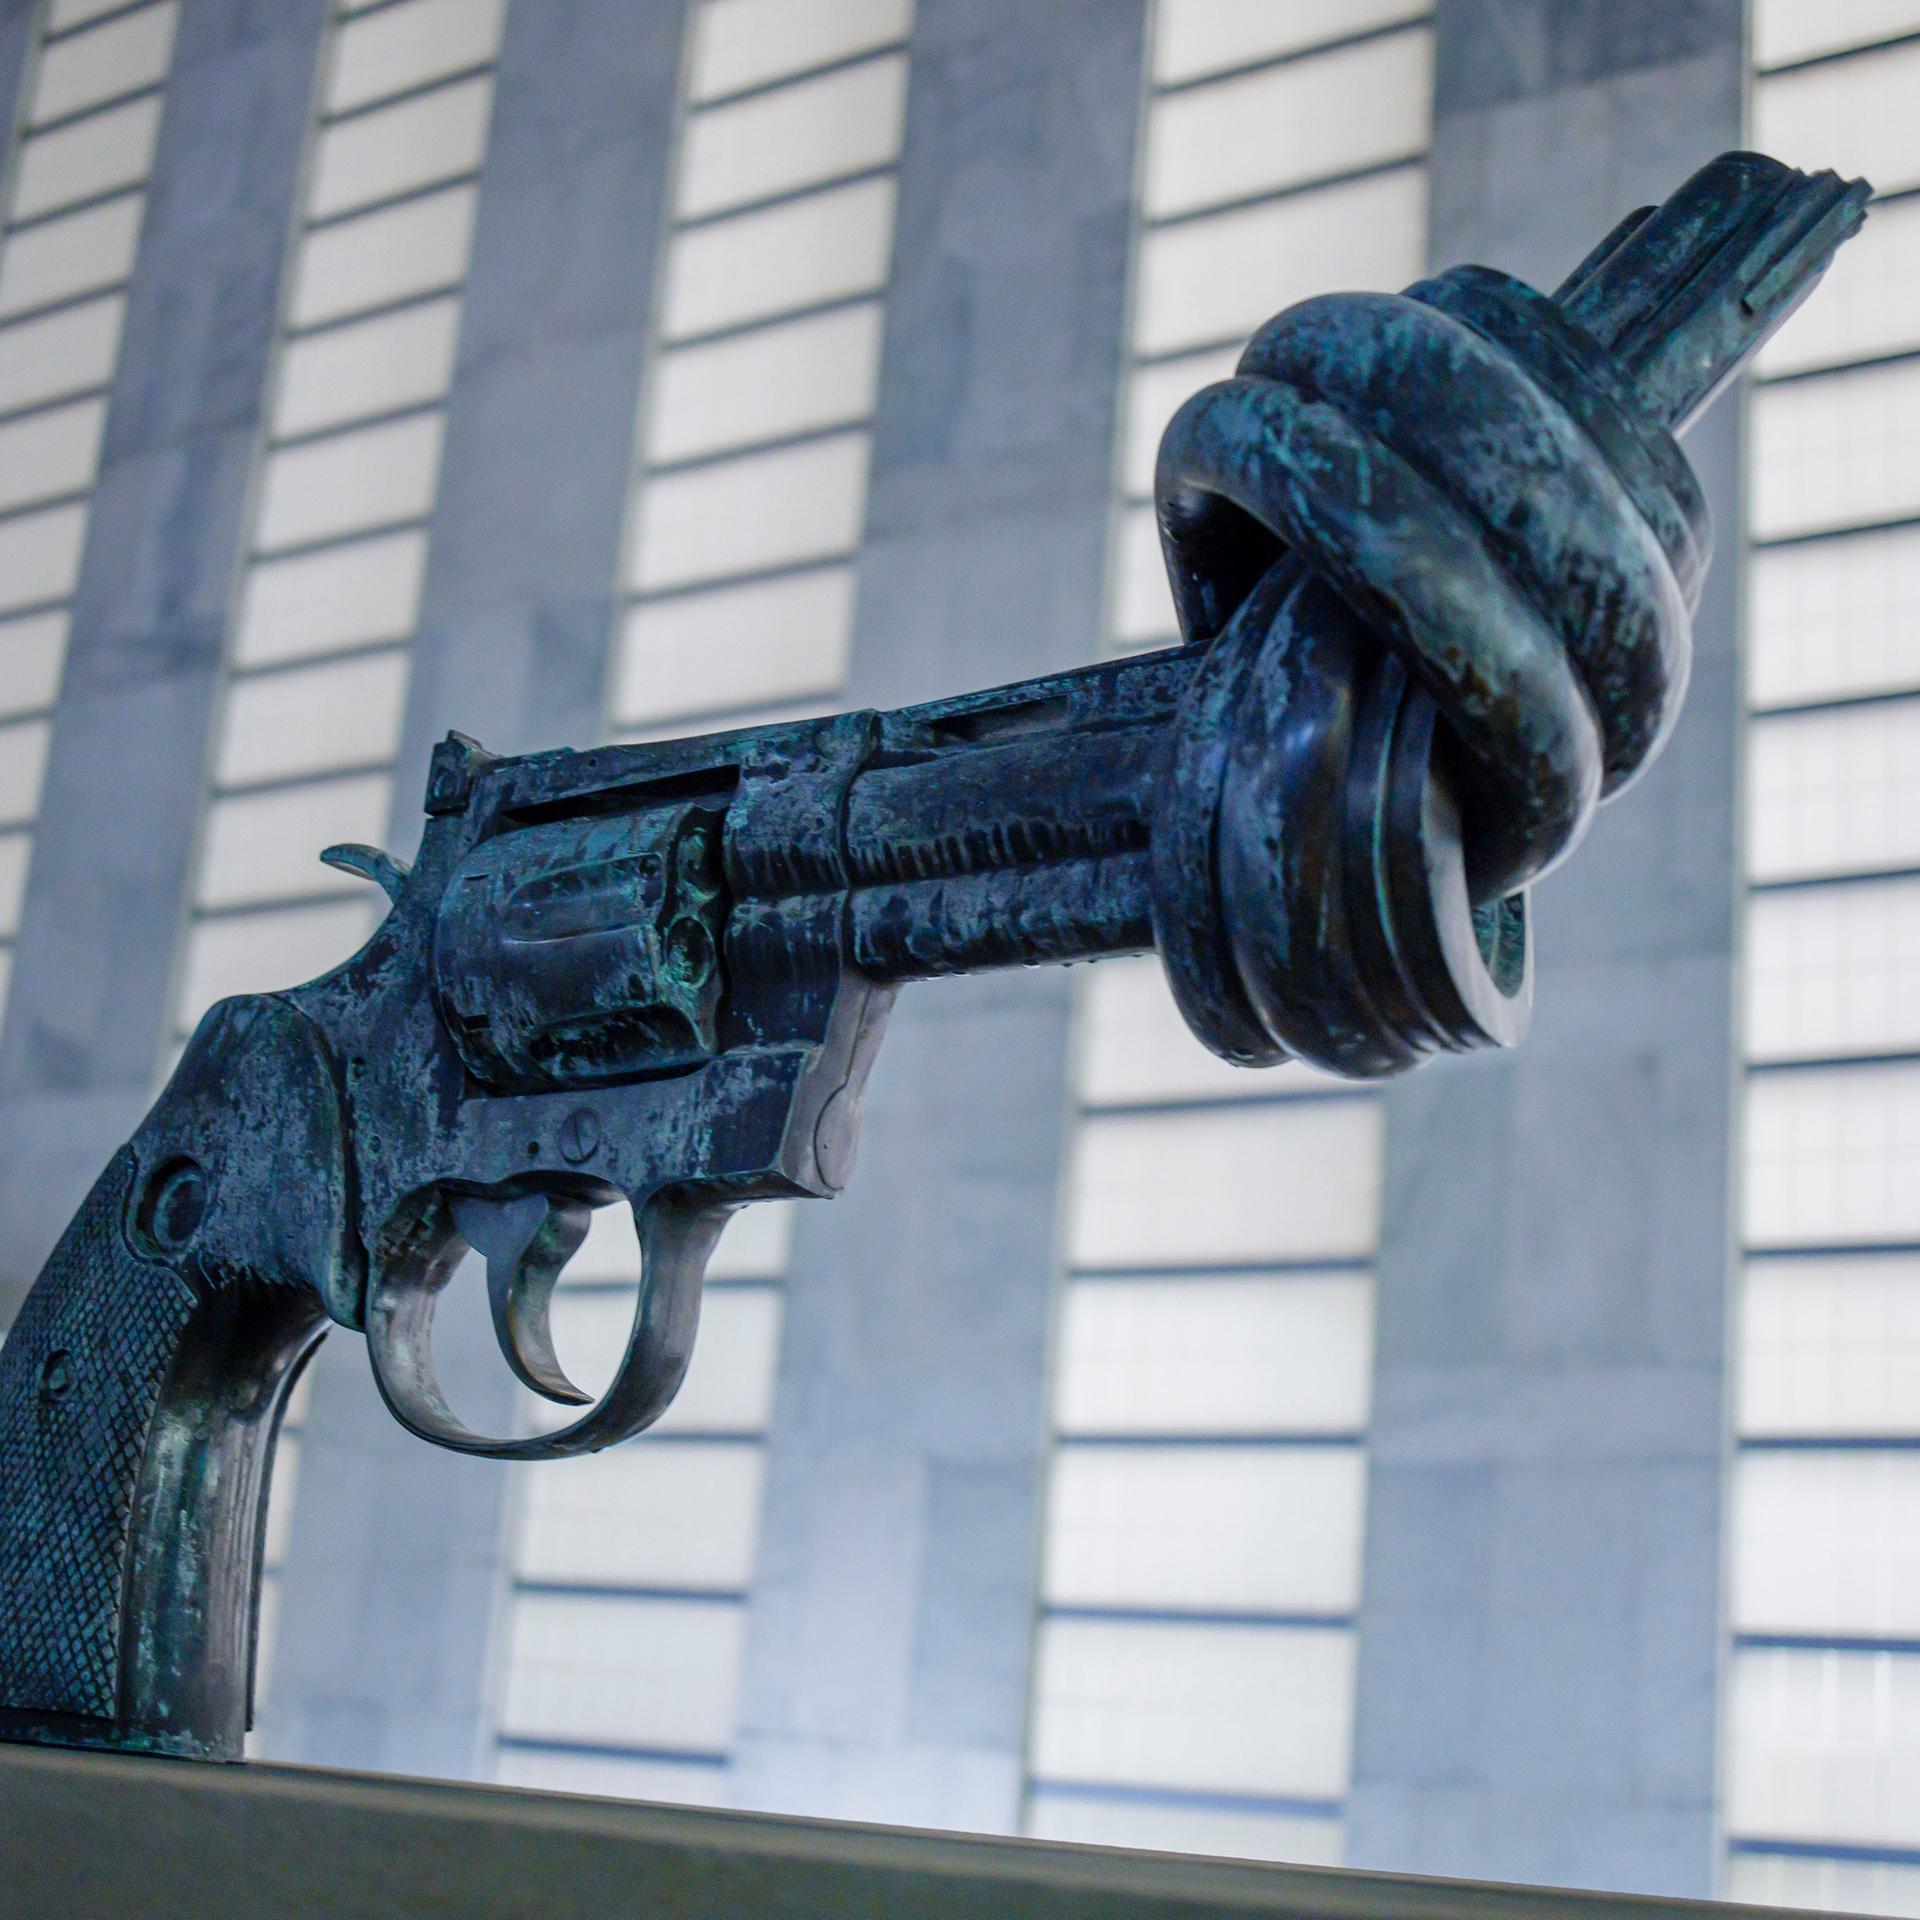 Die Skulptur "Non-violence" vor dem Hauptgebäude der Vereinten Nationen in New York zeigt eine verknotete Waffe.